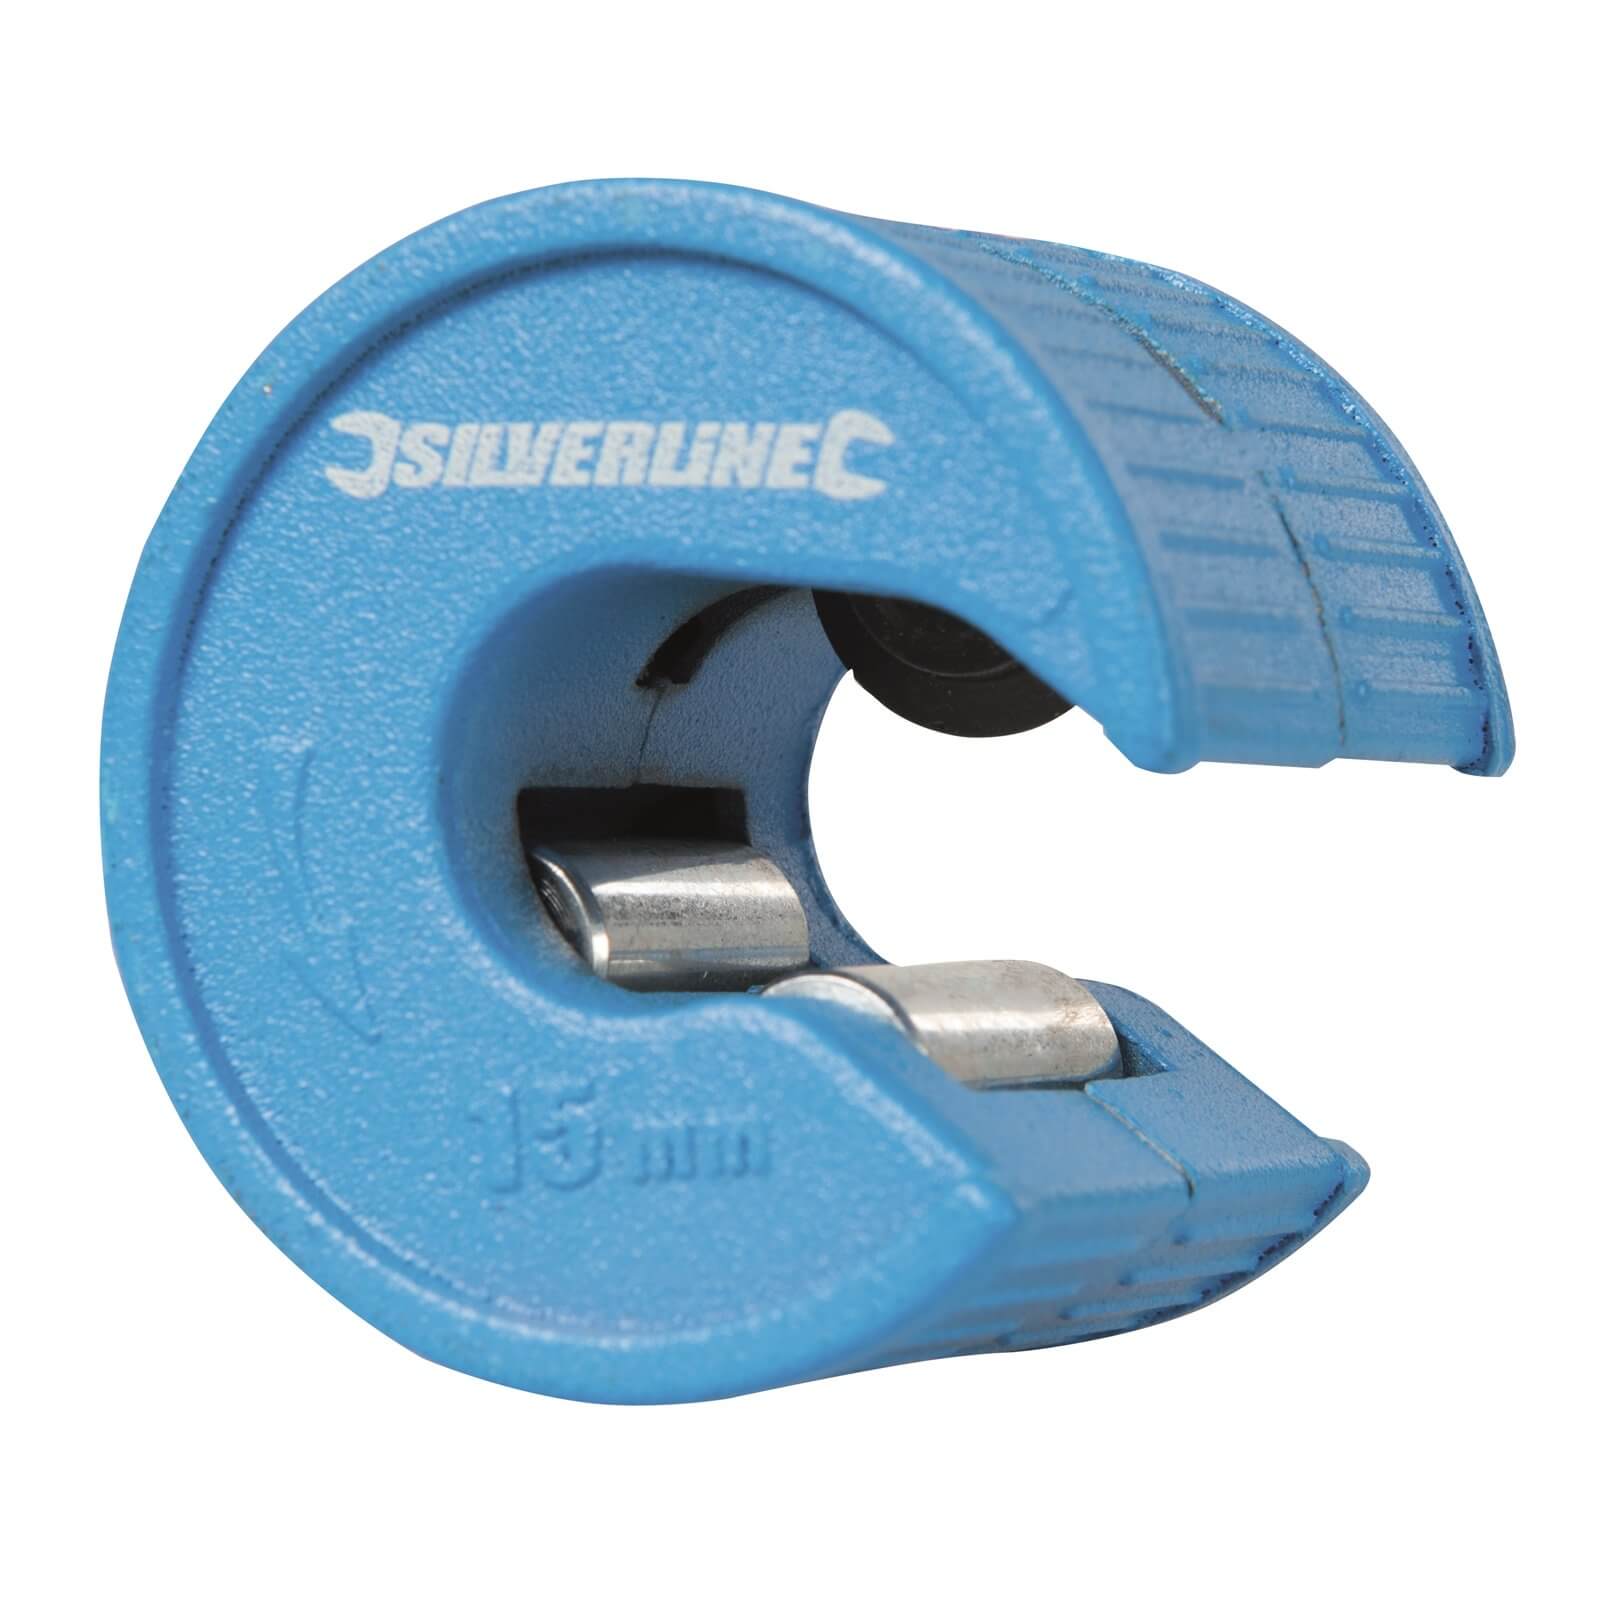 Silverline Quick Cut Pipe Cutter - 15mm